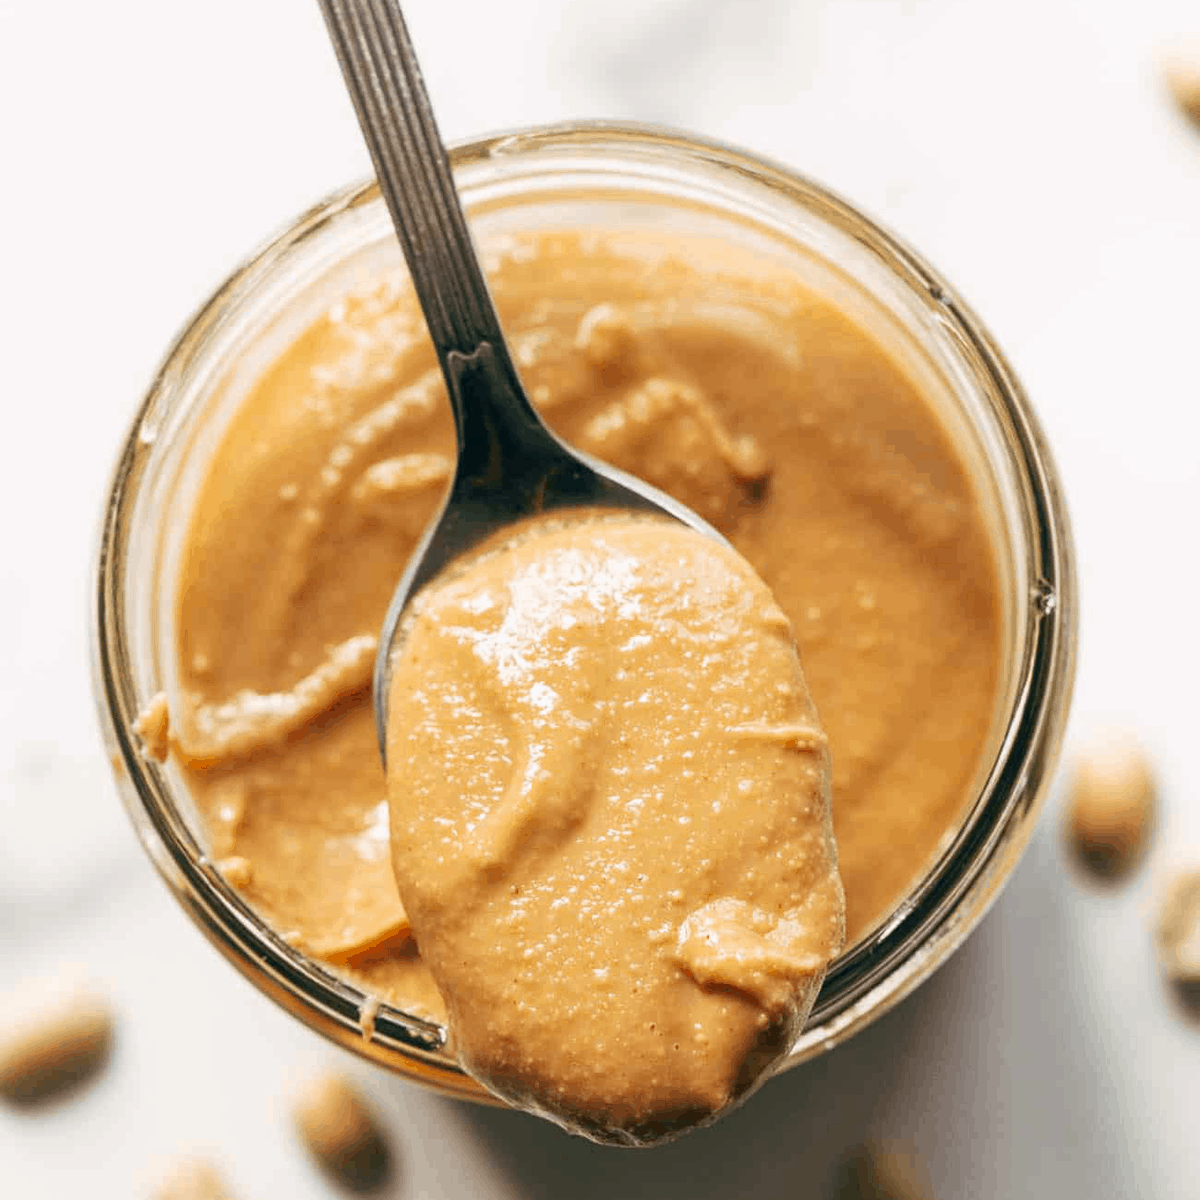 12 Minute Homemade Peanut Butter